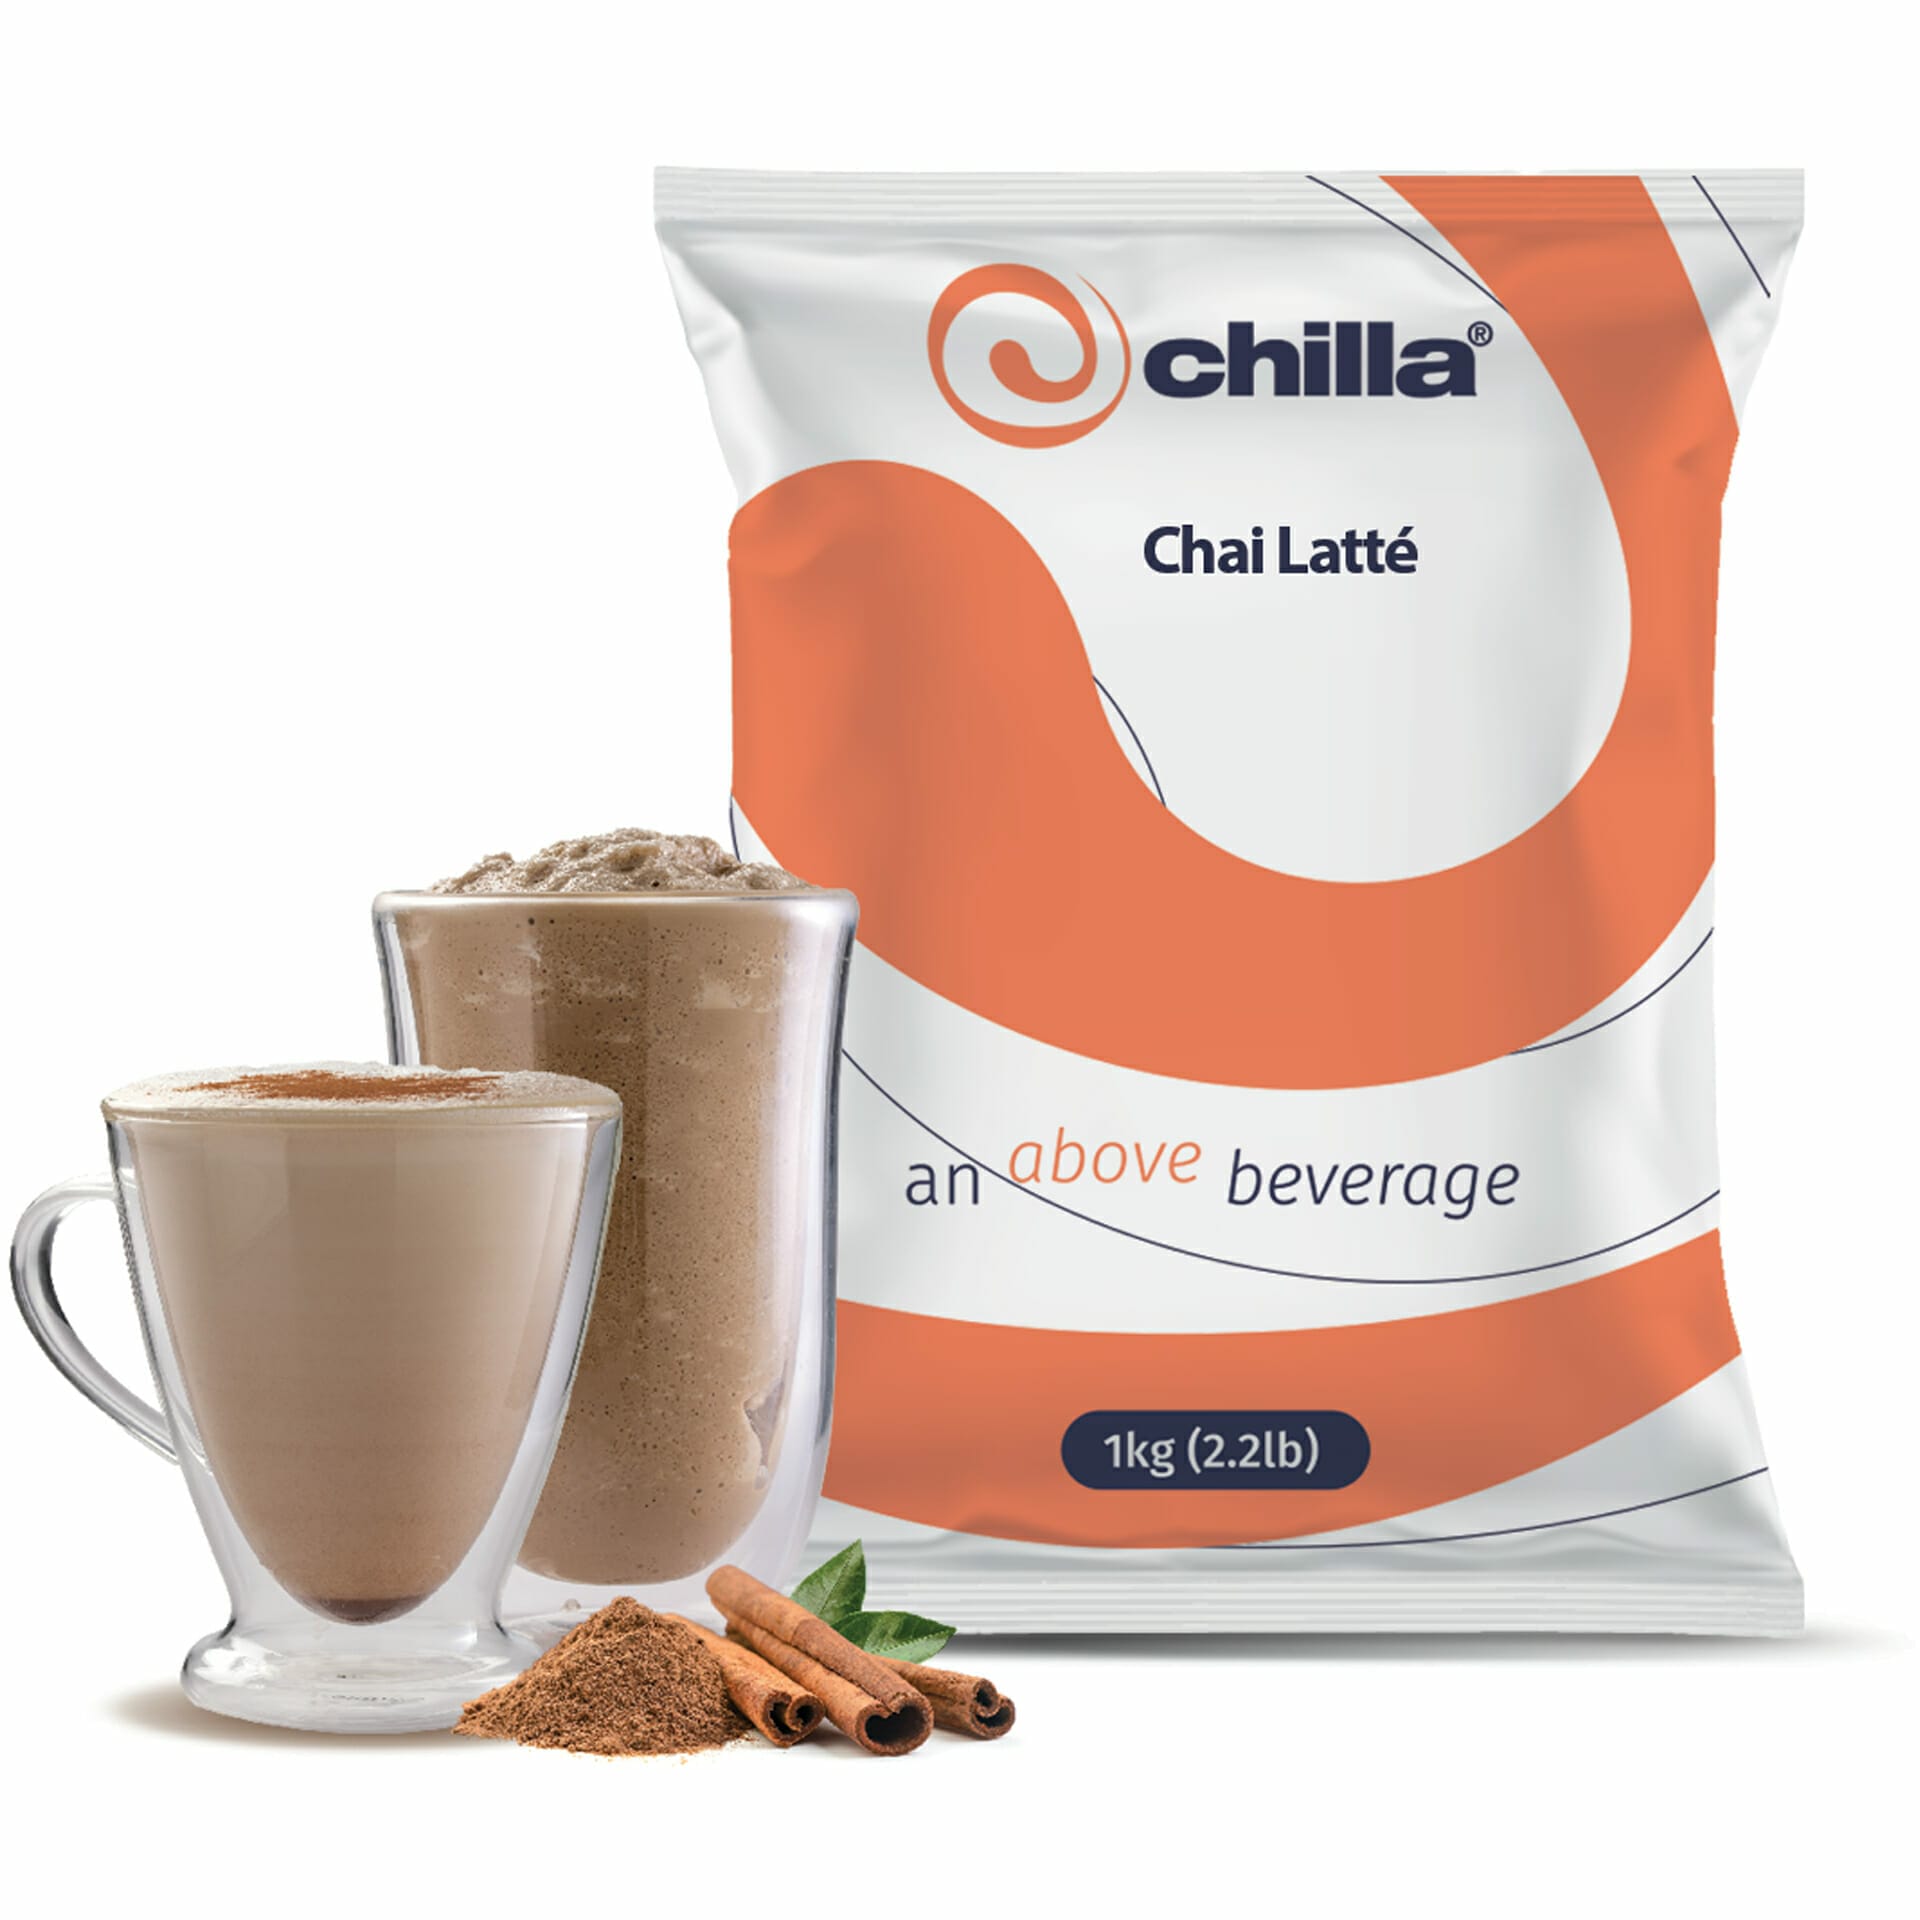 1kg Chilla Chai latte